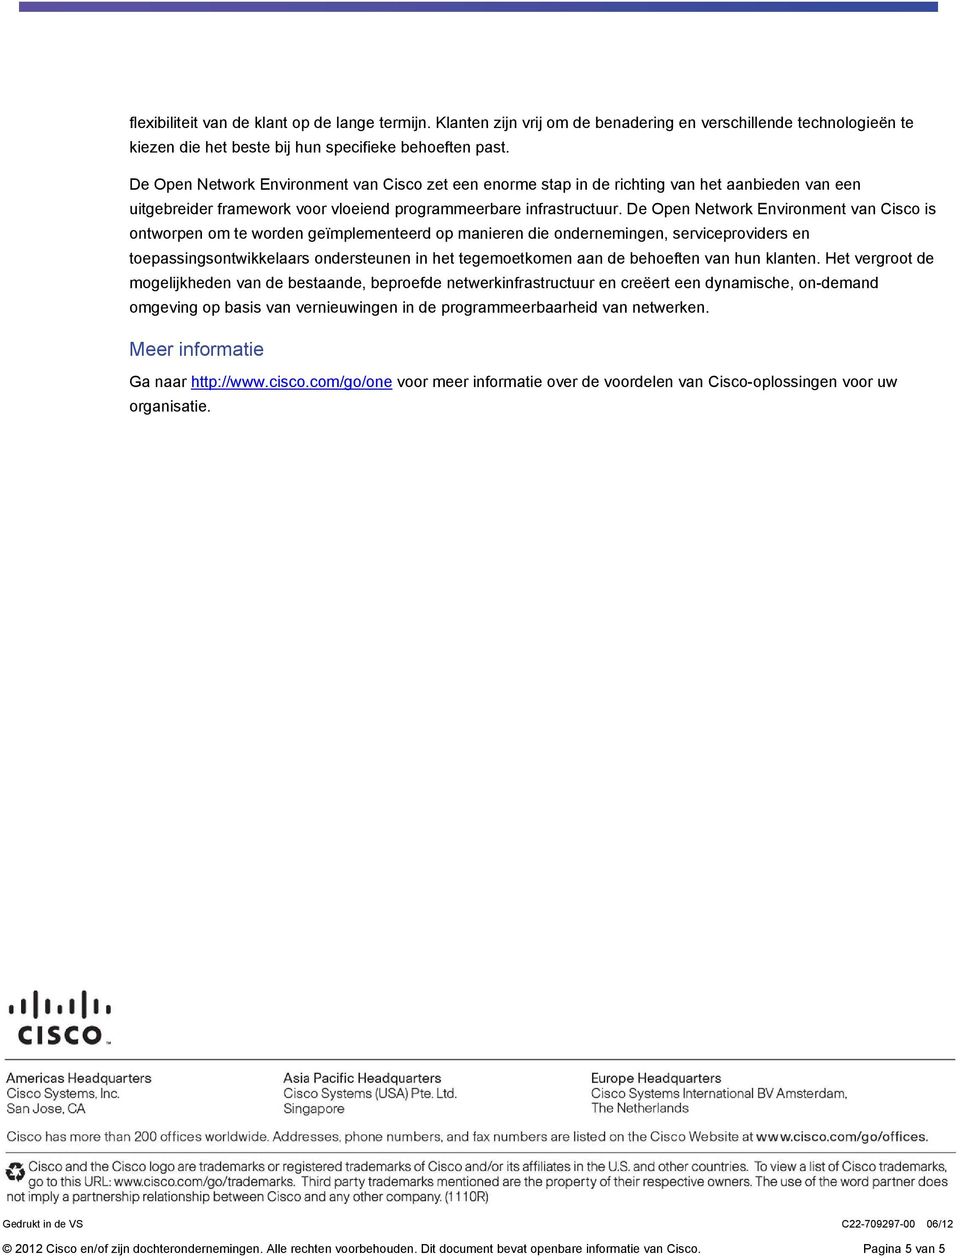 De Open Network Environment van Cisco is ontworpen om te worden geïmplementeerd op manieren die ondernemingen, serviceproviders en toepassingsontwikkelaars ondersteunen in het tegemoetkomen aan de